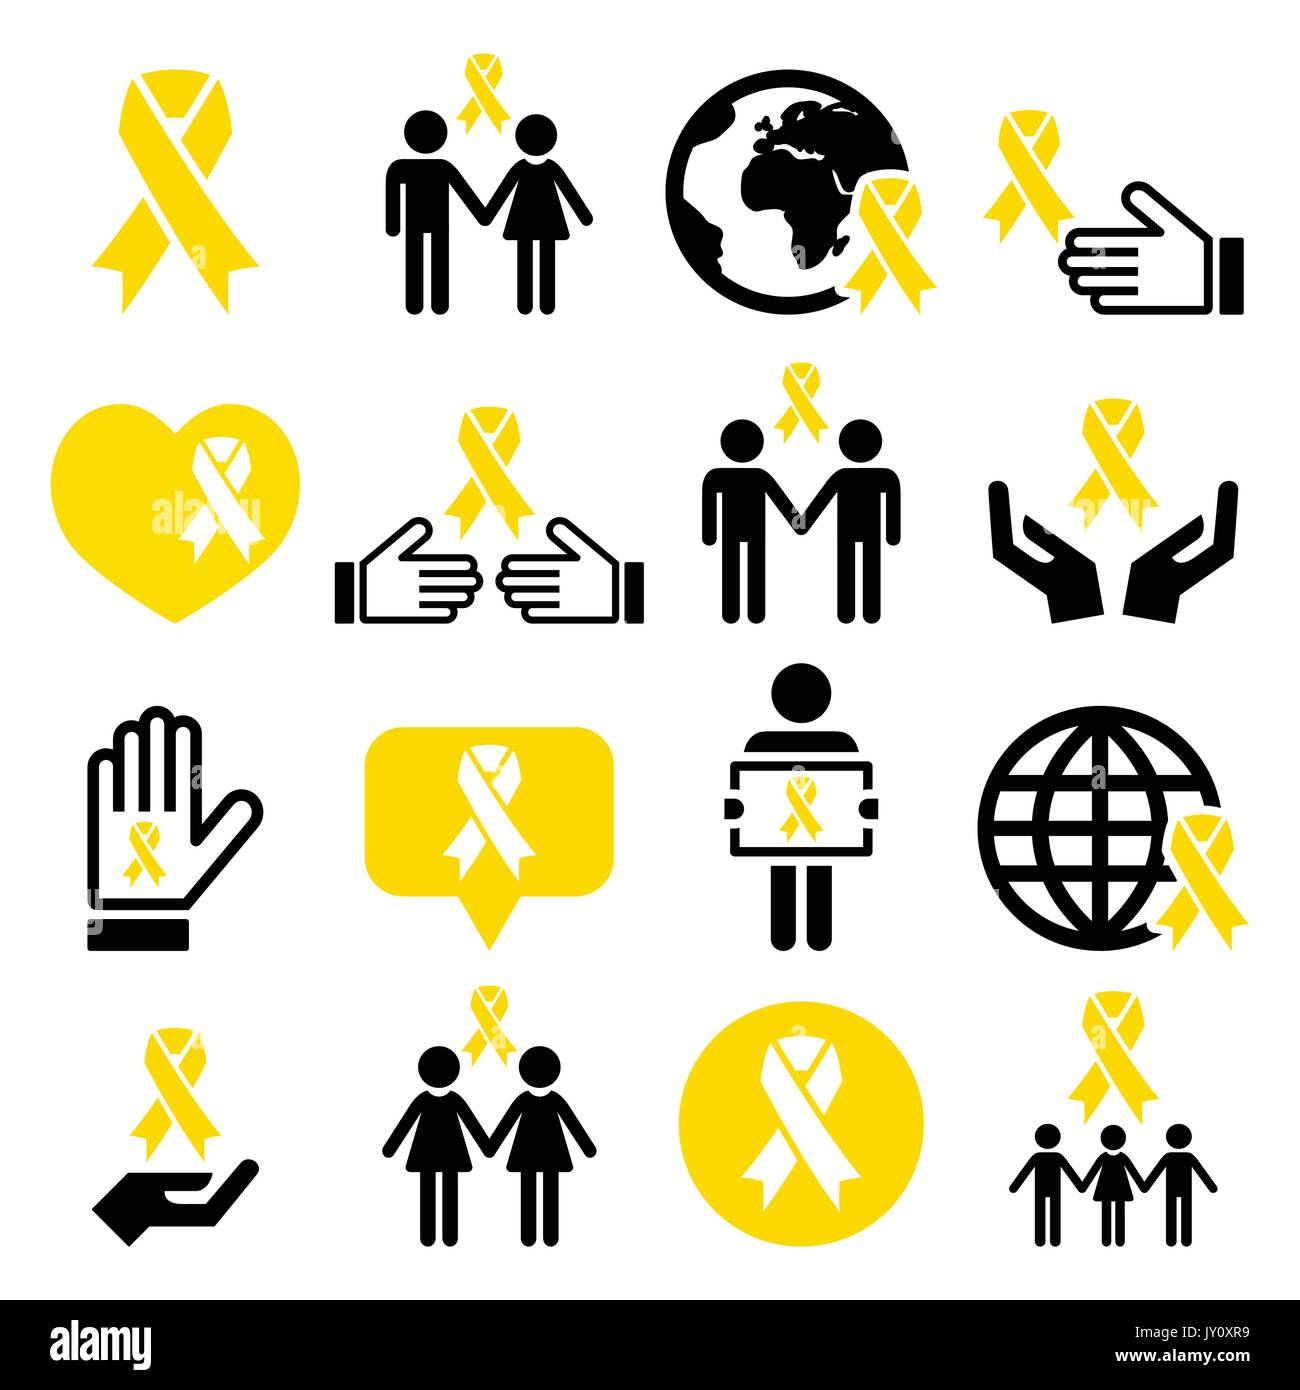 Icone di nastro giallo - prevenzione suicida, sostegno per le truppe, genitori adottivi simbolo internazionale di speranza - giallo icone vettore nastro i Illustrazione Vettoriale